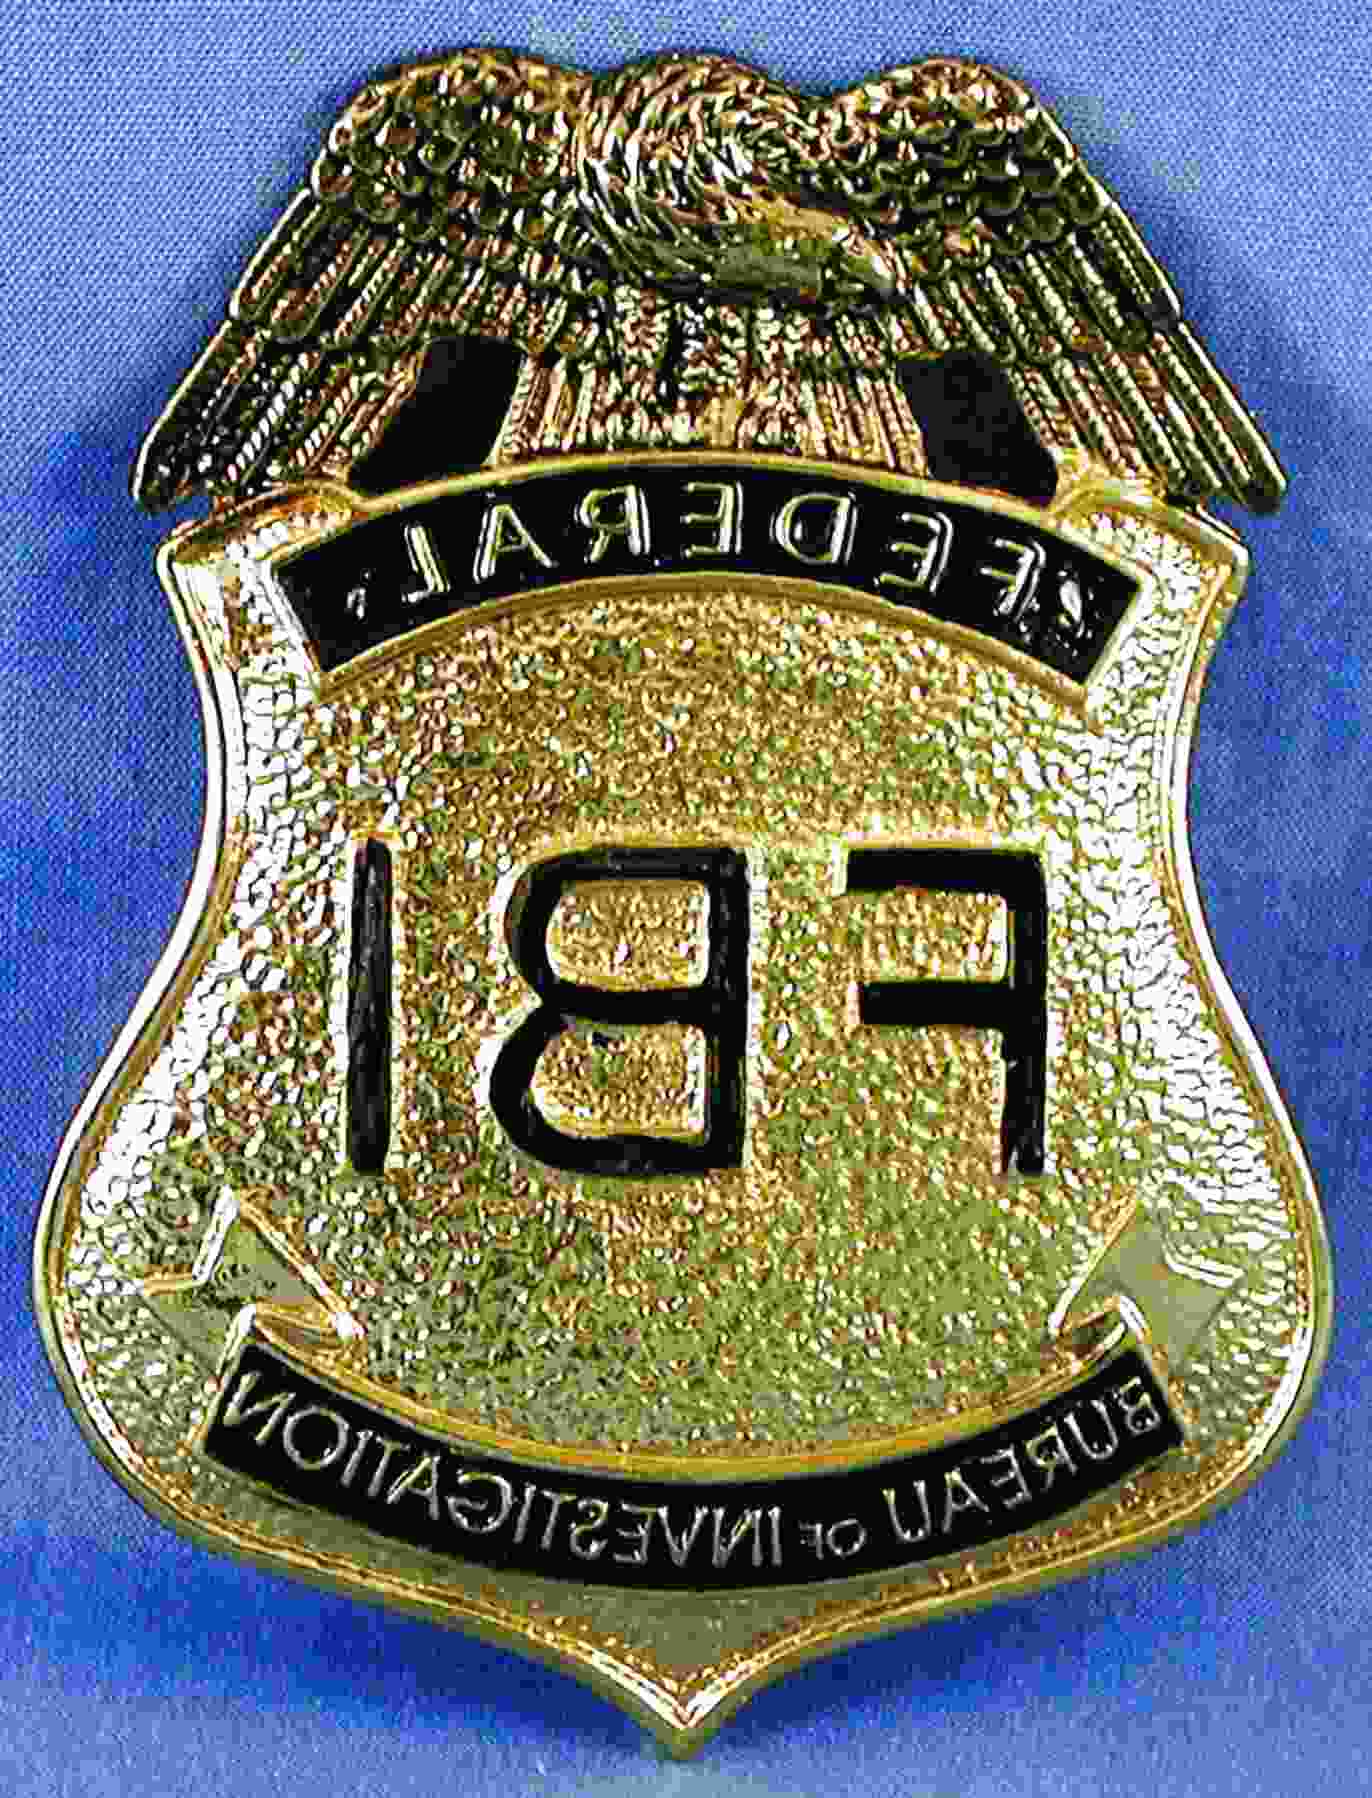 second-hand-fbi-badge-in-ireland-10-used-fbi-badges